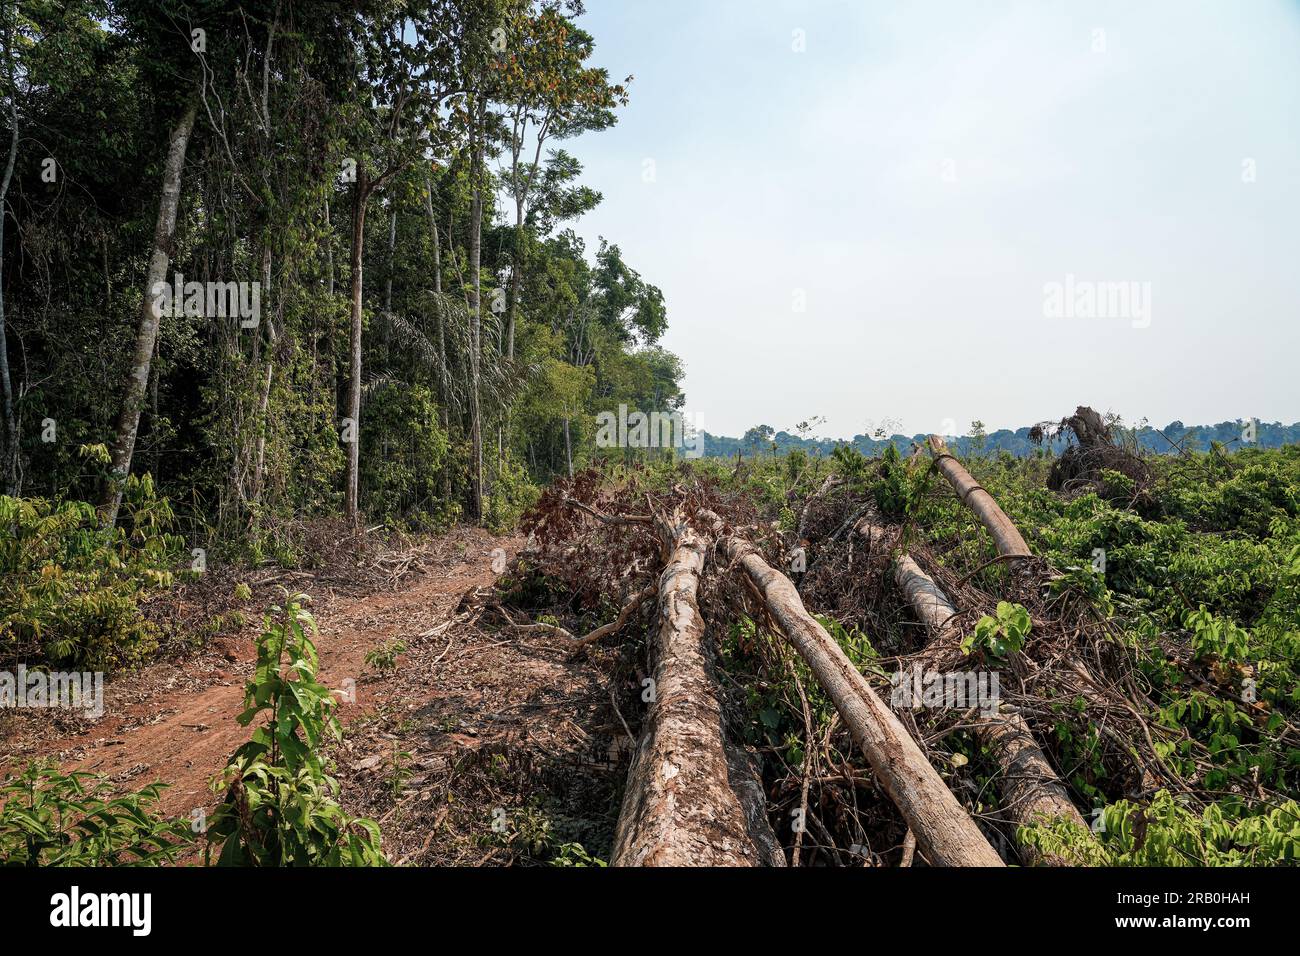 Déforestation dans la forêt amazonienne. Troncs d'arbres coupés par des bûcherons illégaux et forêt en arrière-plan. Brésil. Écologie, environnement, CO2. Banque D'Images